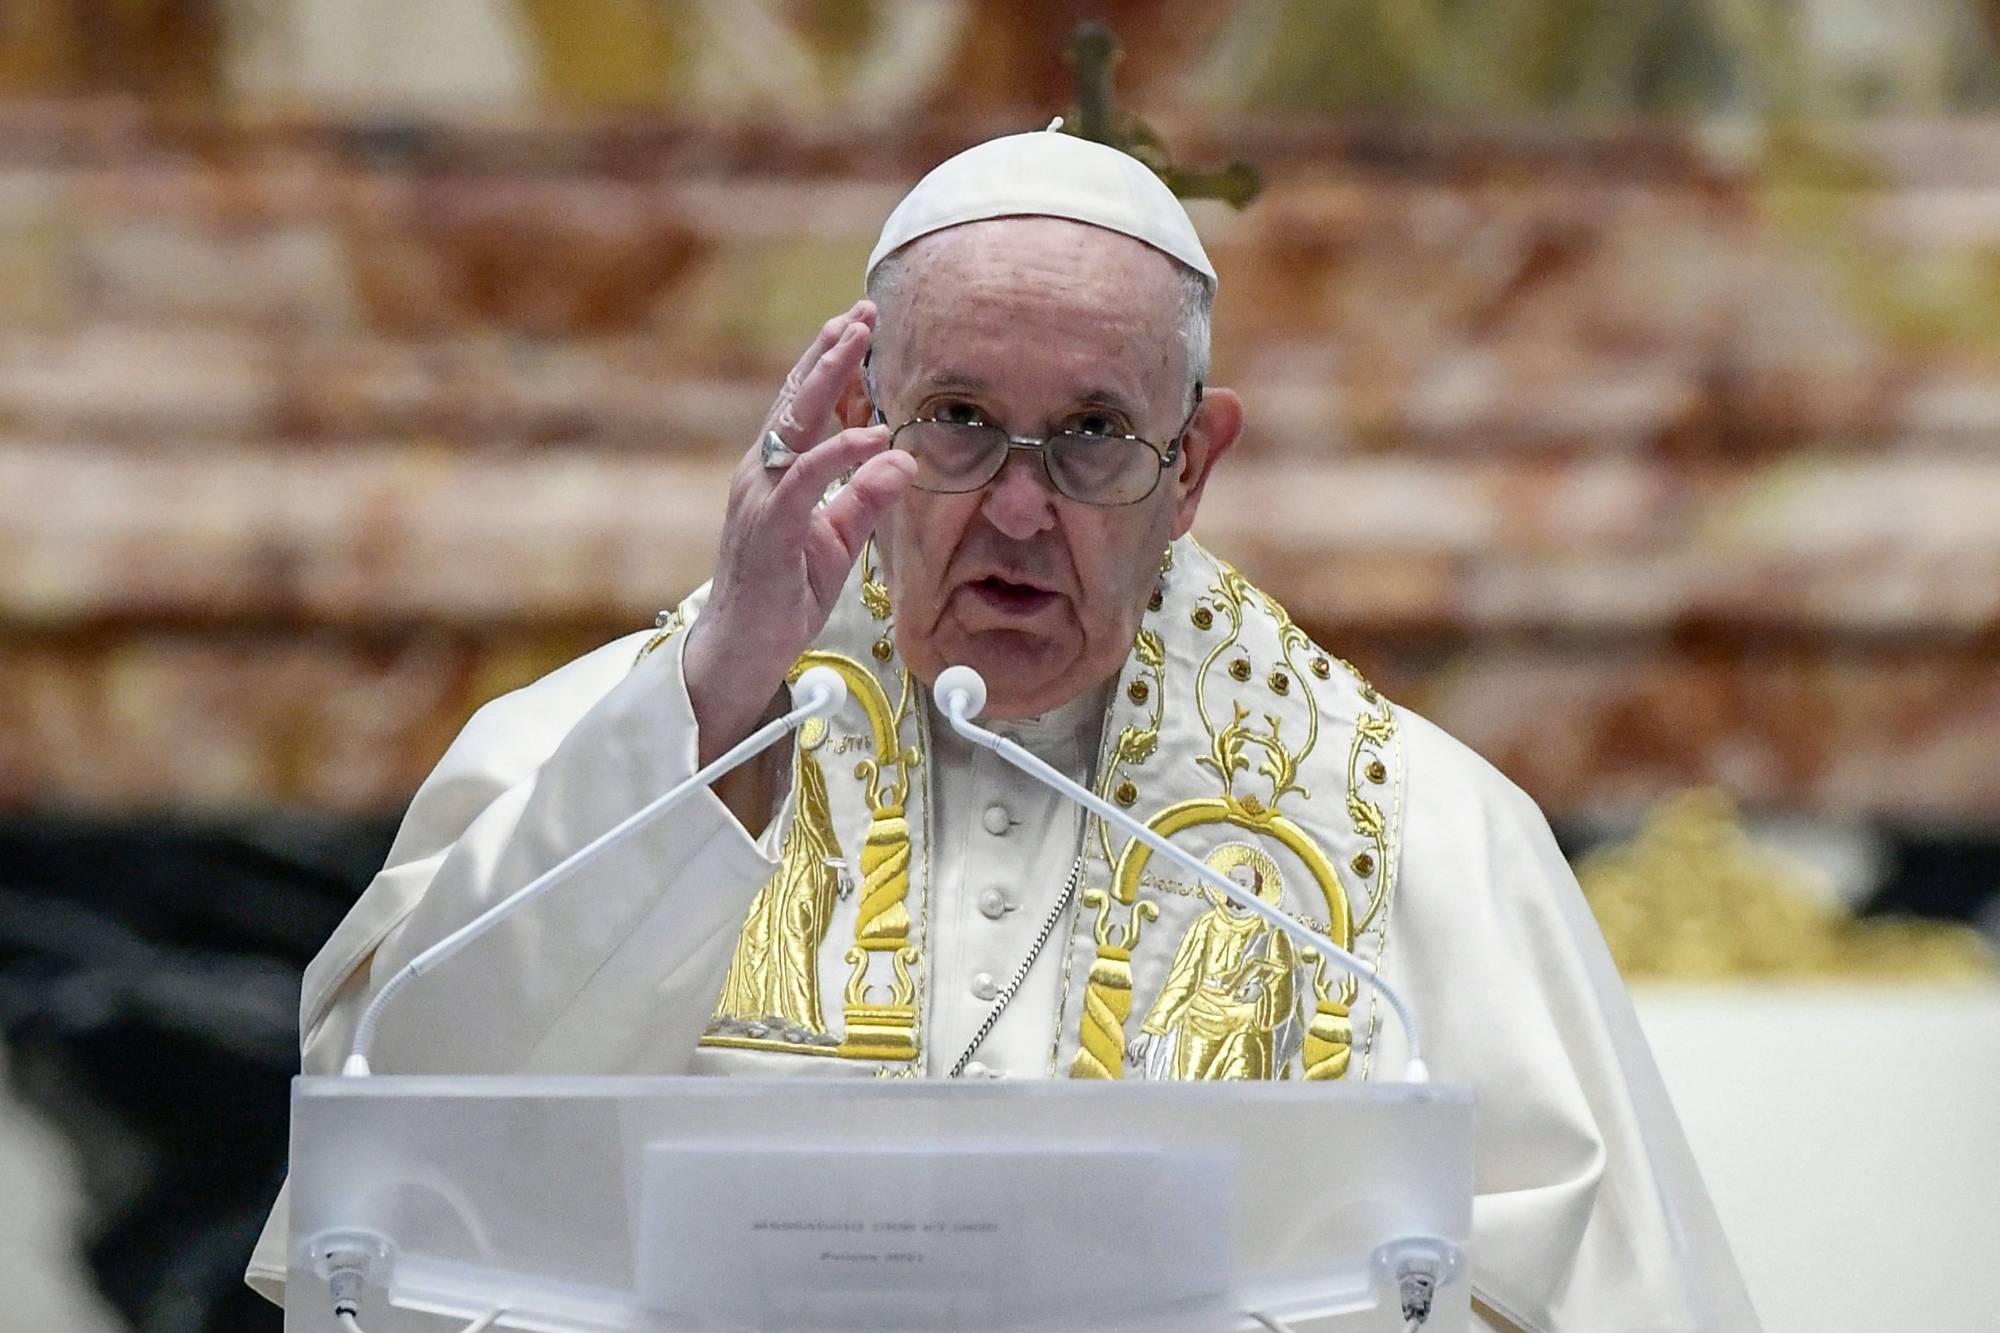 Ιταλία: Ο Πάπας στην Αρένα της Βερόνας - Εναγκαλισμός ενός Ισραηλινού και ενός Παλαιστίνιου νέου ενώπιον του ποντίφικα